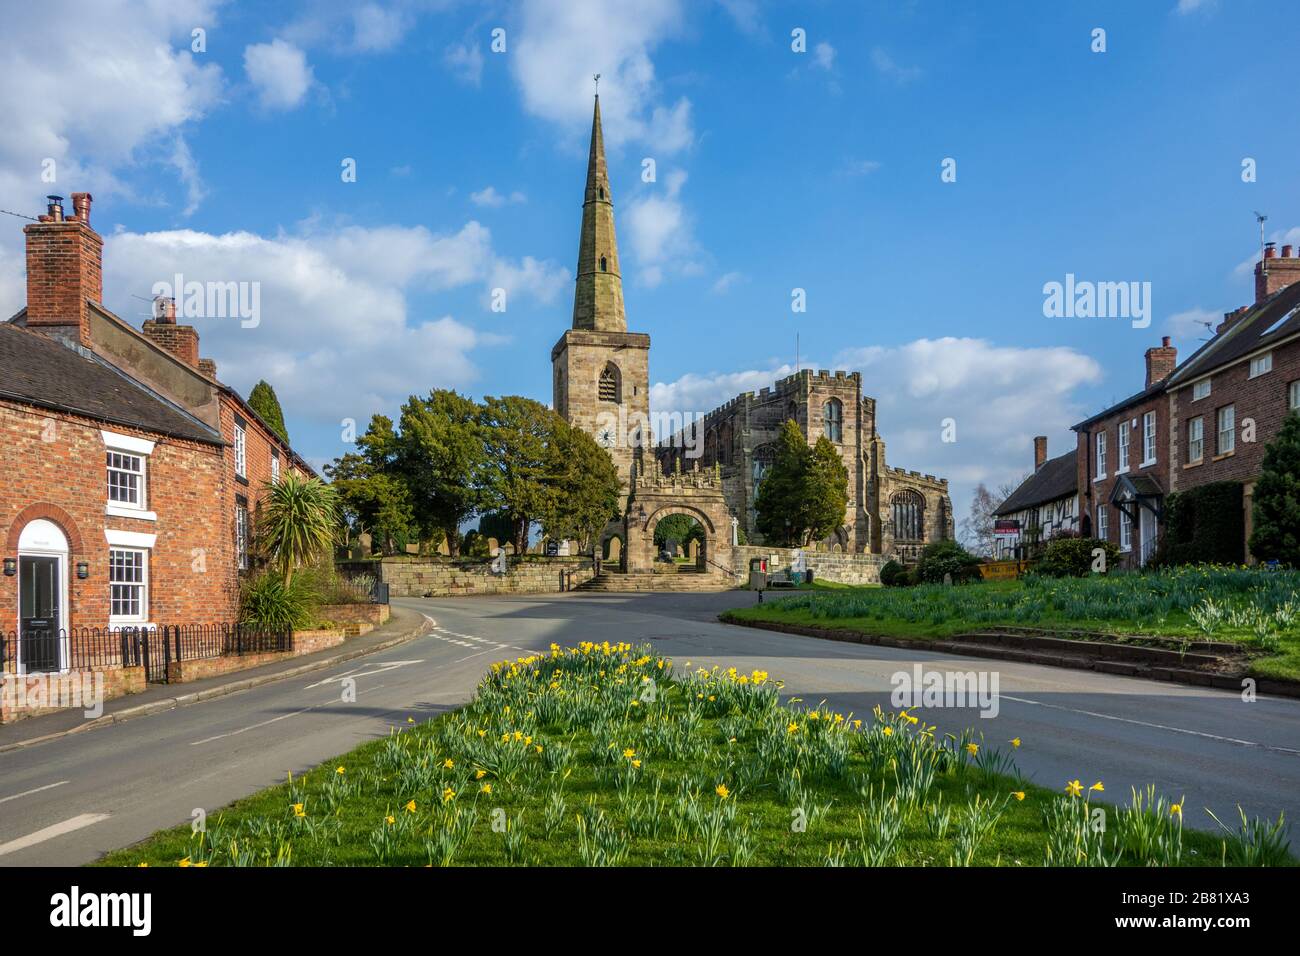 Église St Mary's à Astbury près de Congleton Cheshire Angleterre avec le vert du village et des jonquilles en fleur au printemps avec le ciel bleu Banque D'Images